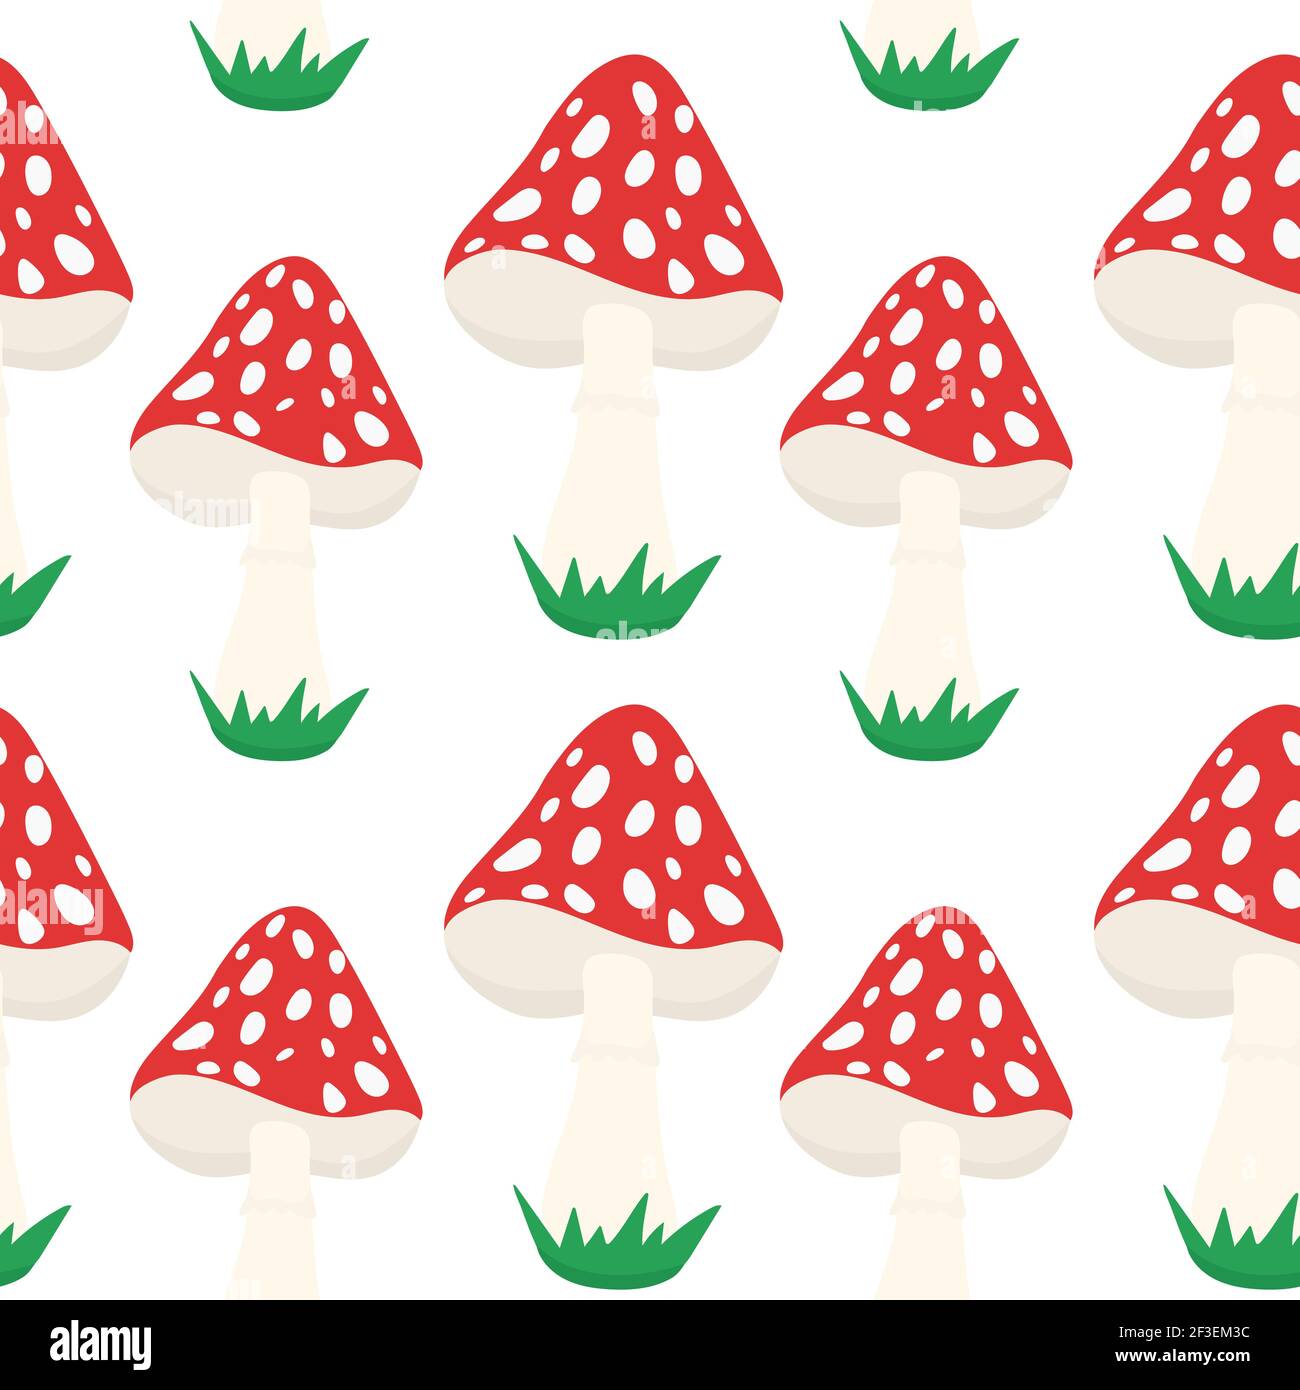 Nahtloser Hintergrund mit Amanita. Ein sich wiederholendes Muster mit roten giftigen Pilzen. Vektor. Stock Vektor